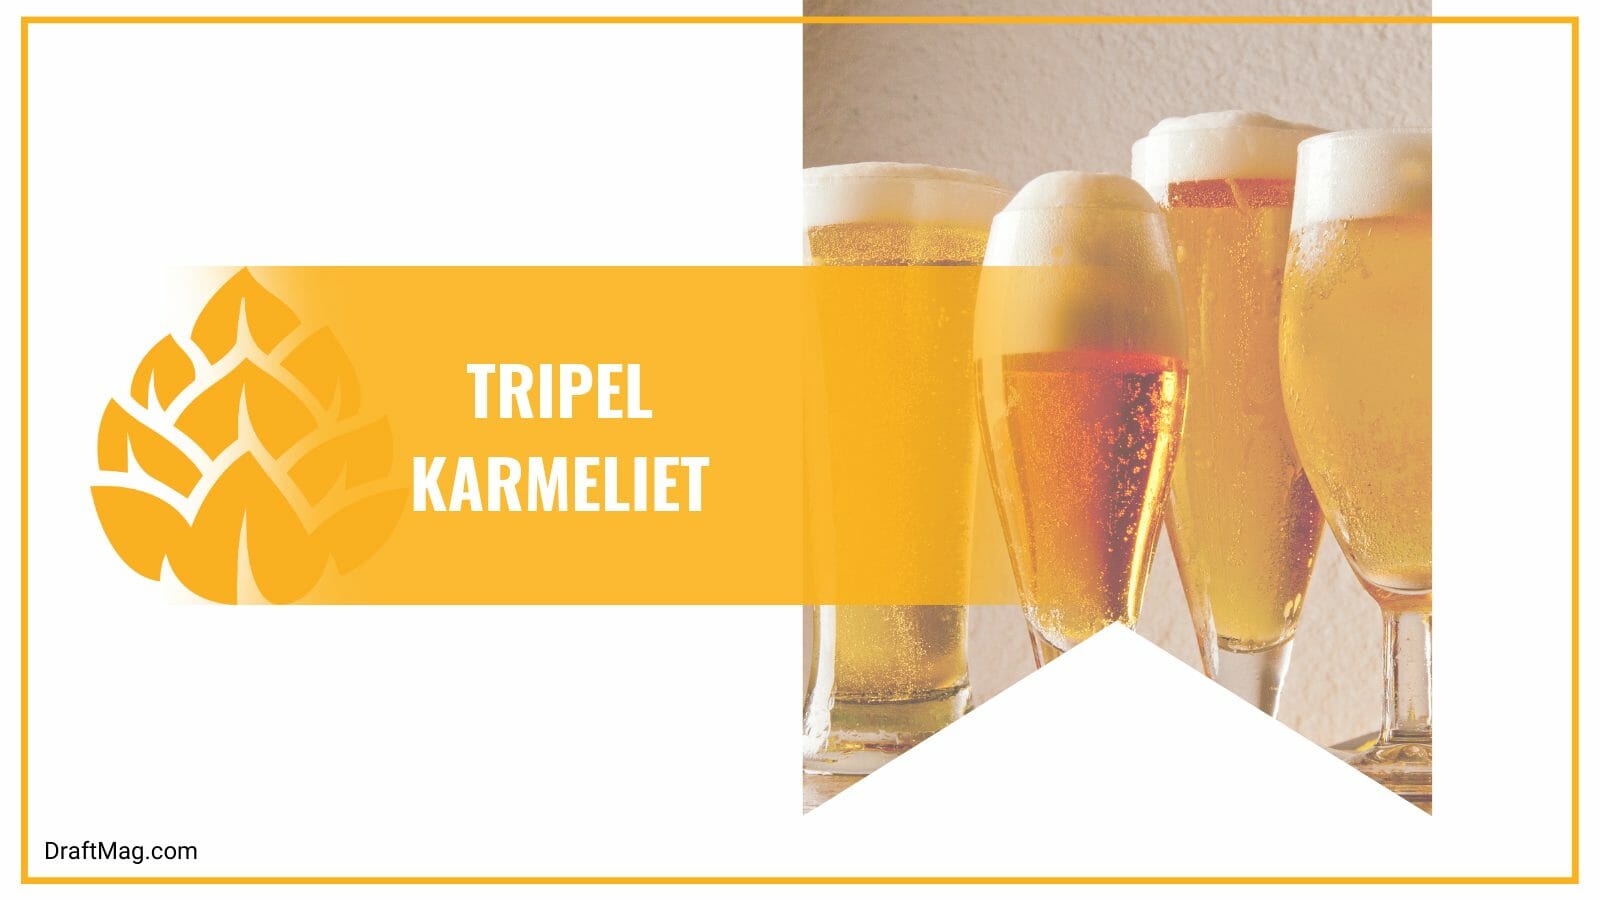 Tripel karmeliet with sweet taste